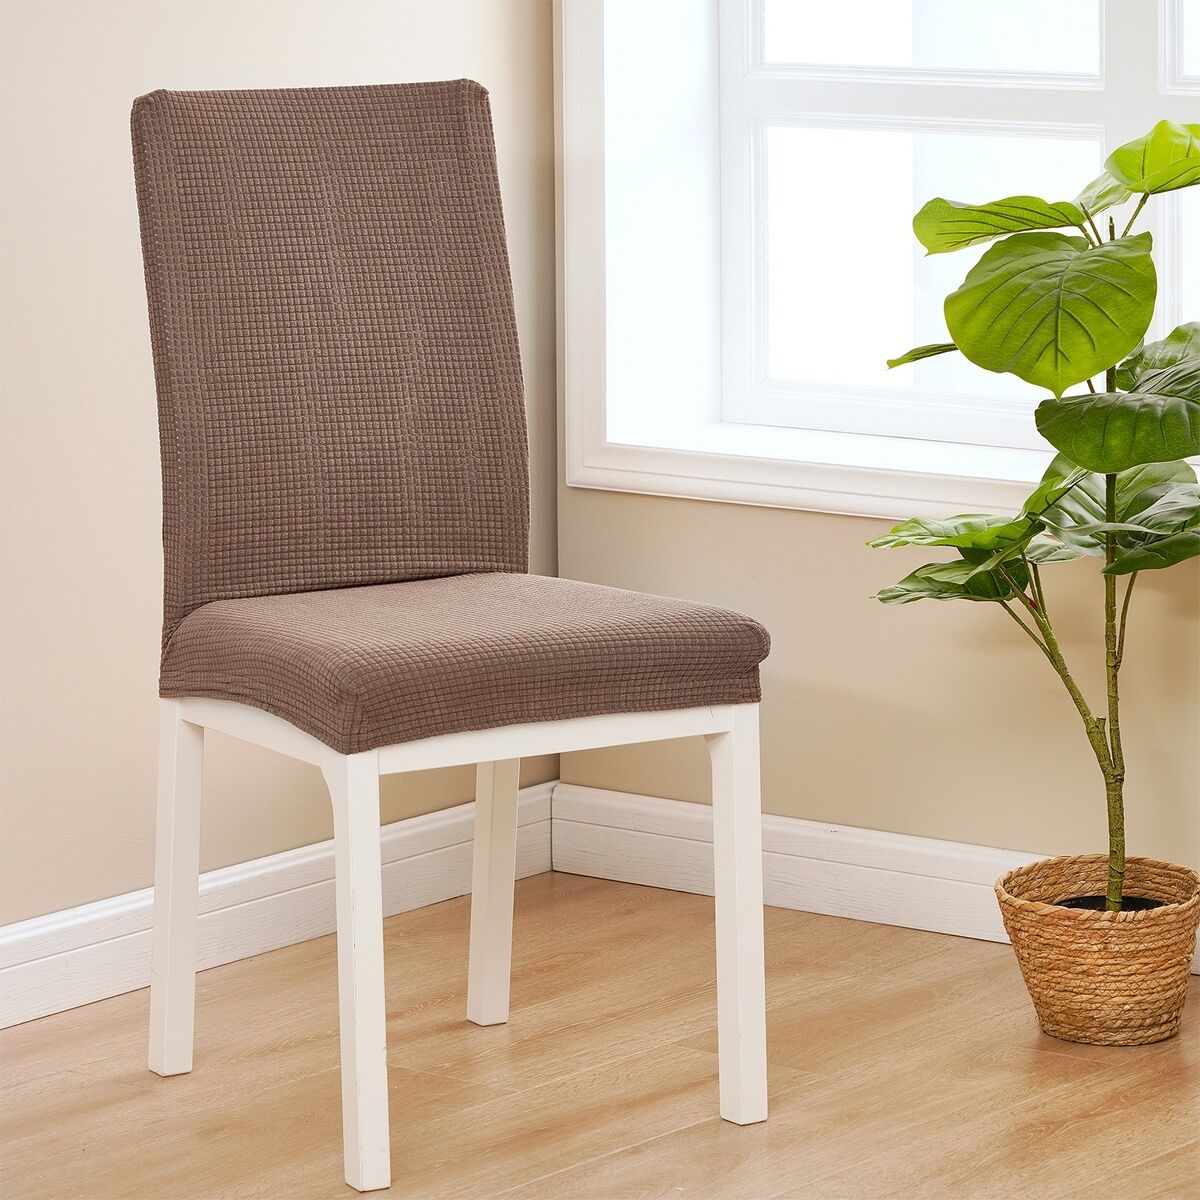 4Home Elastyczny wodoodporny pokrowiec na krzesłoMagic clean brązowy, 45 - 50 cm, zestaw 2 szt.